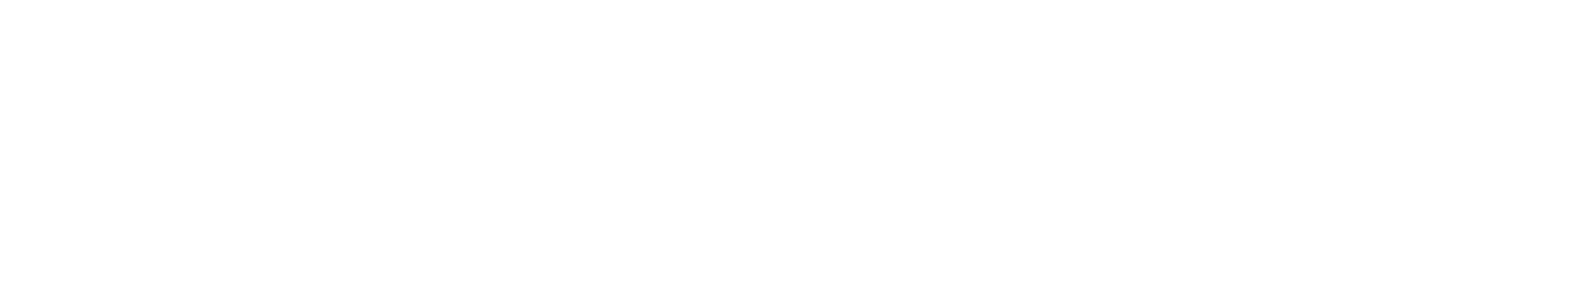 Lee Enterprises
 logo large for dark backgrounds (transparent PNG)